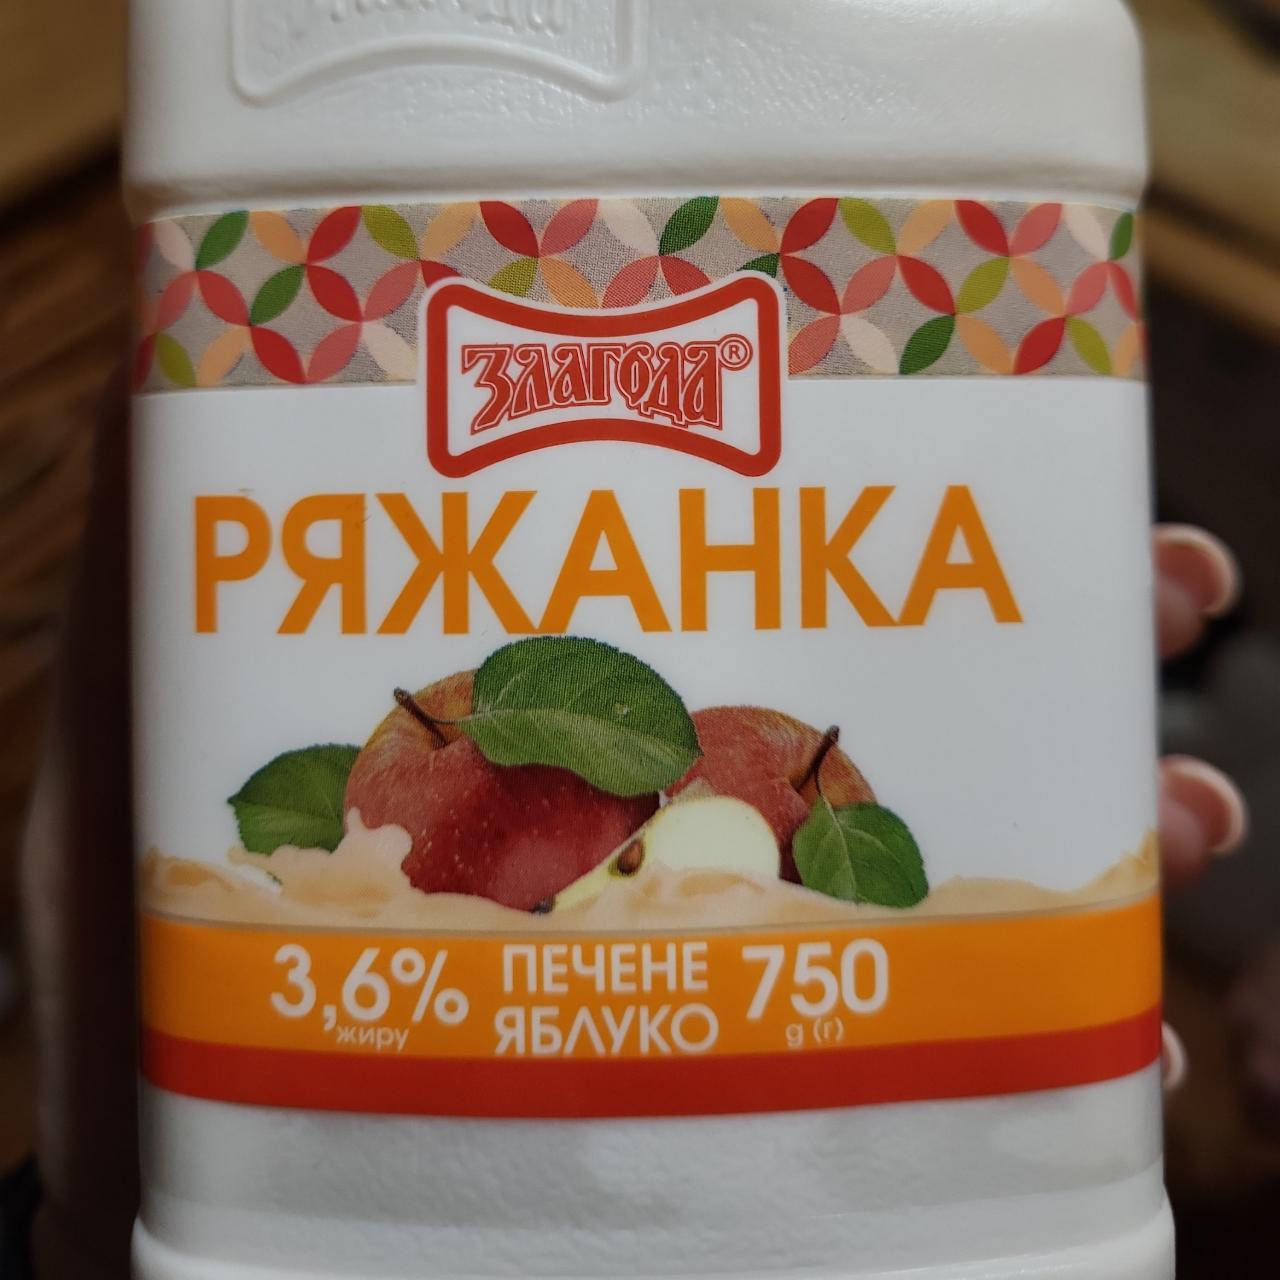 Фото - Ряженка печеное яблоко 3.6% Злагода